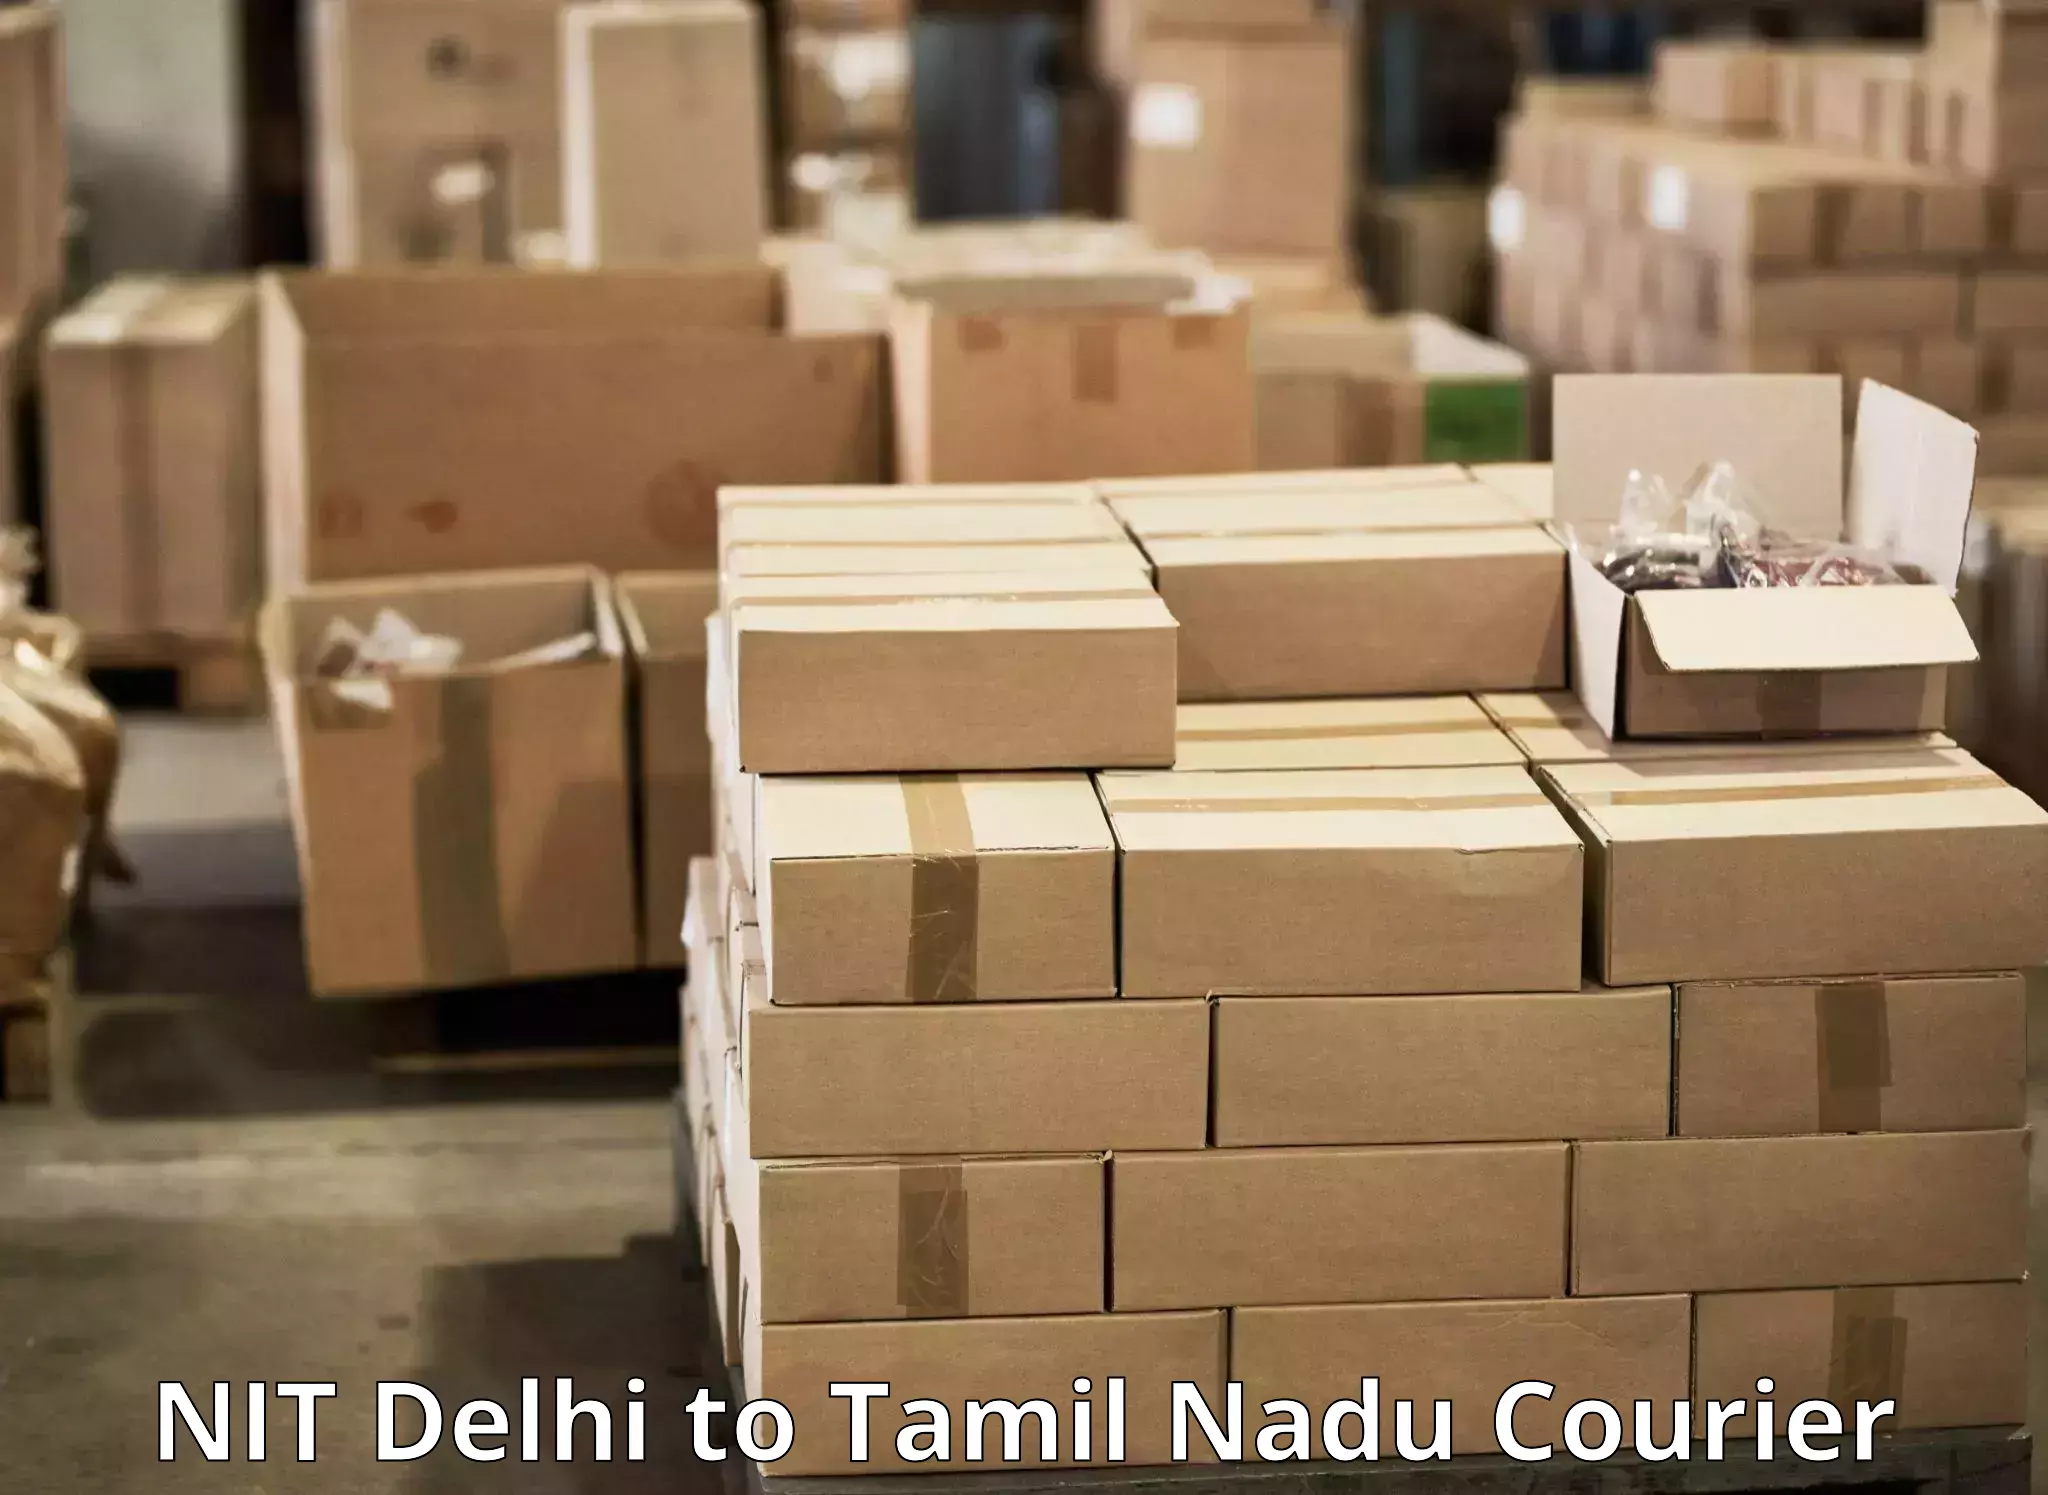 Express logistics providers NIT Delhi to Maharajapuram